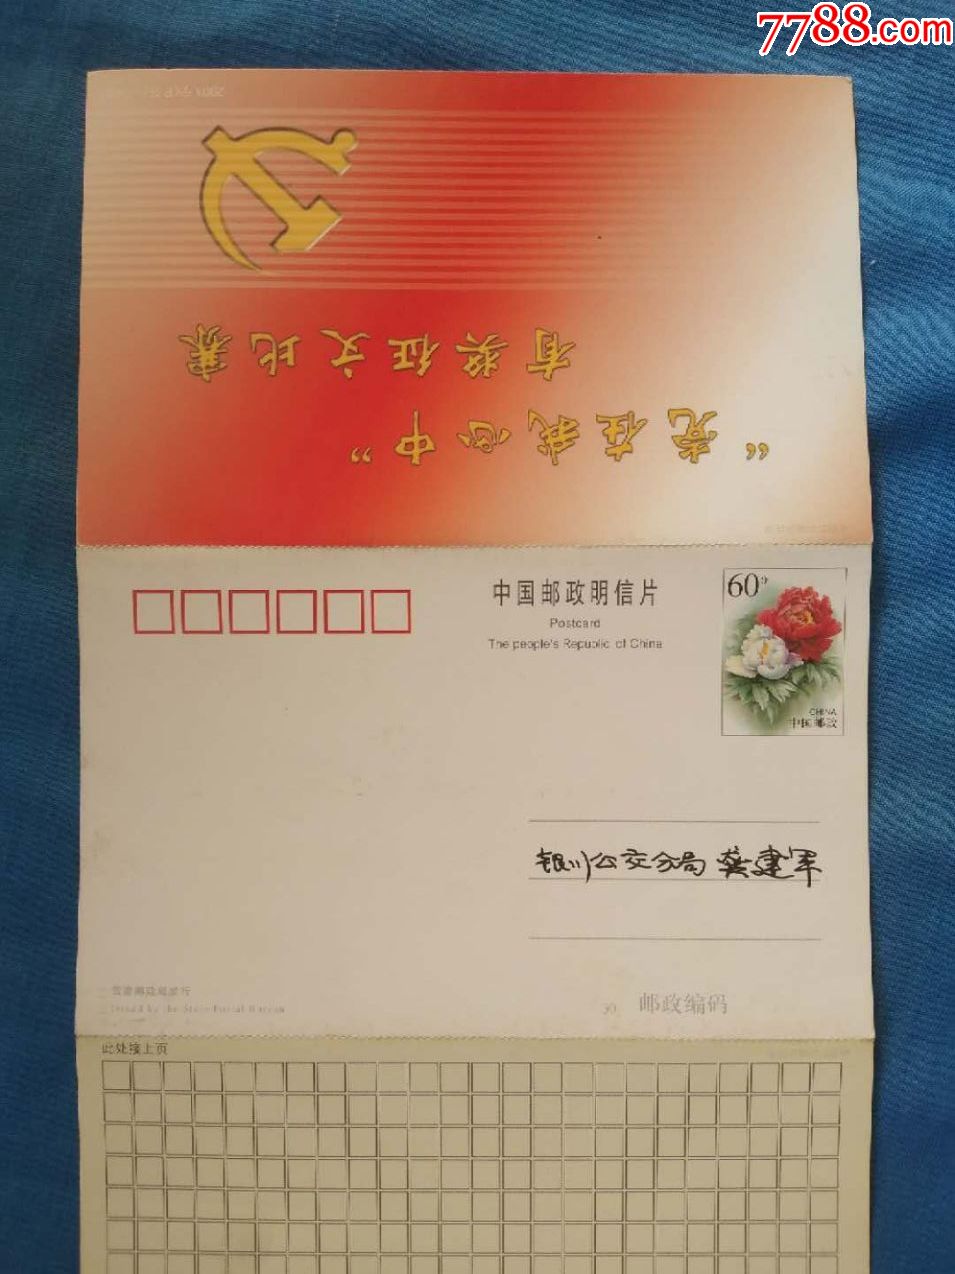 2001年宁夏(pg)"党在我心中,有奖征文比赛"邮资明信片